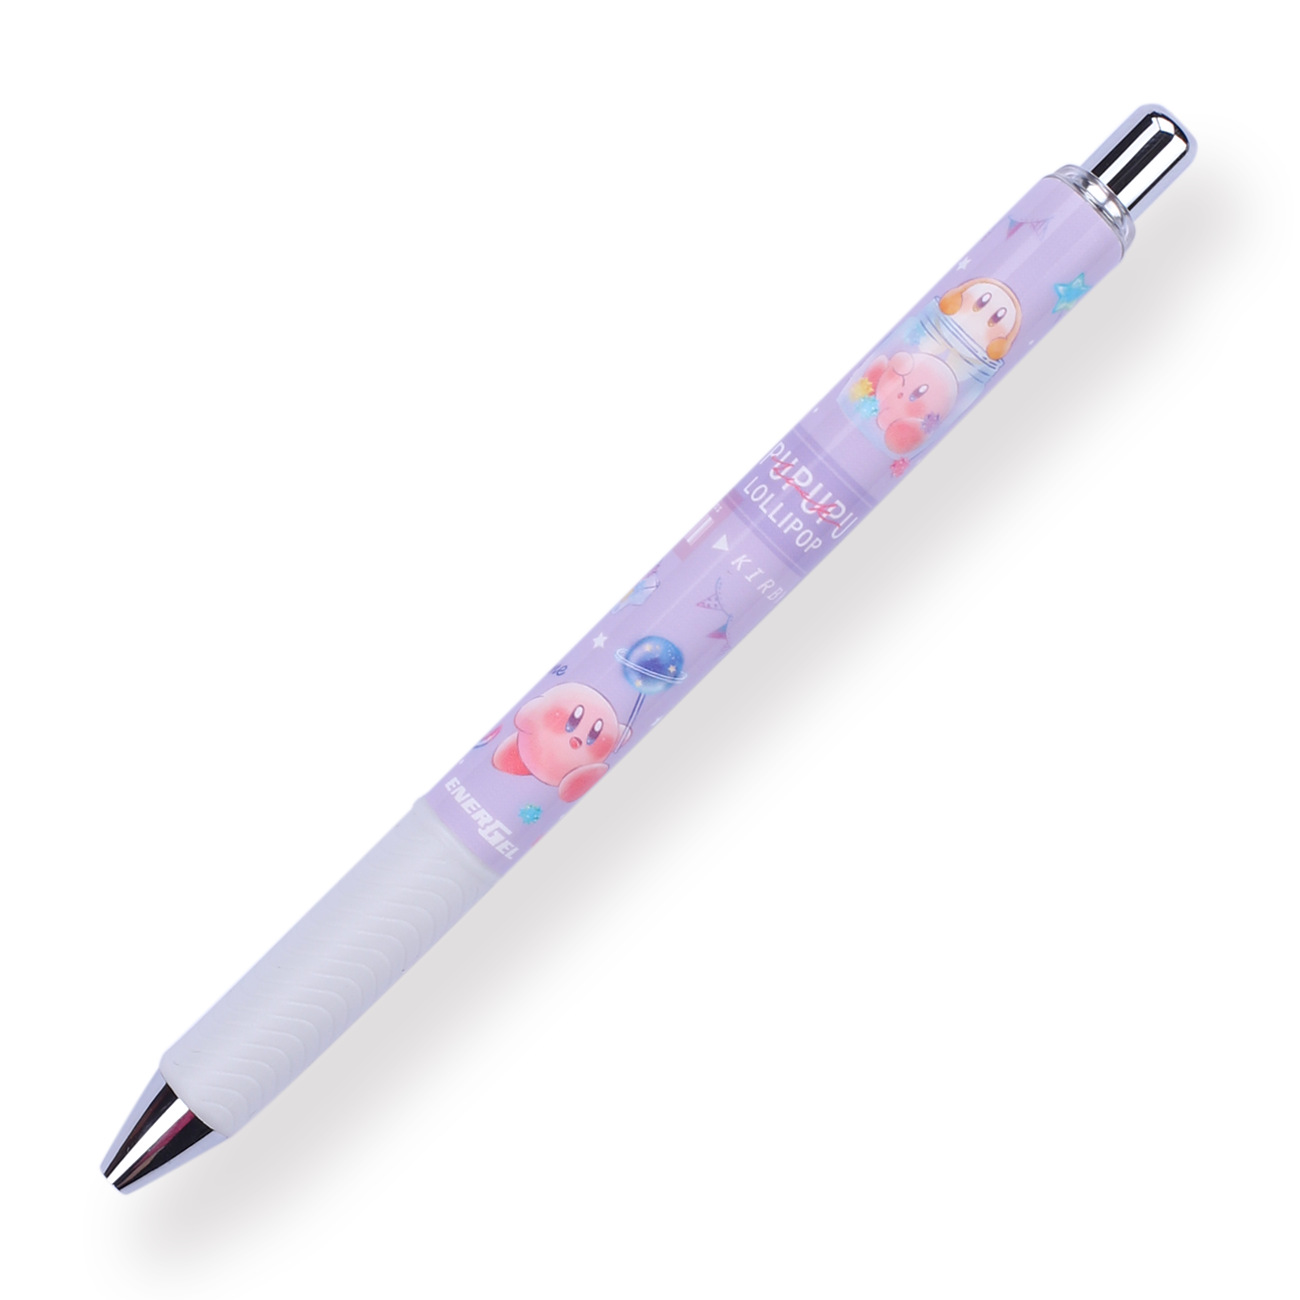 Pentel Energel × Kirby Limited Edition Gel Pen - 0.5 mm - Purple Body - Stationery Pal